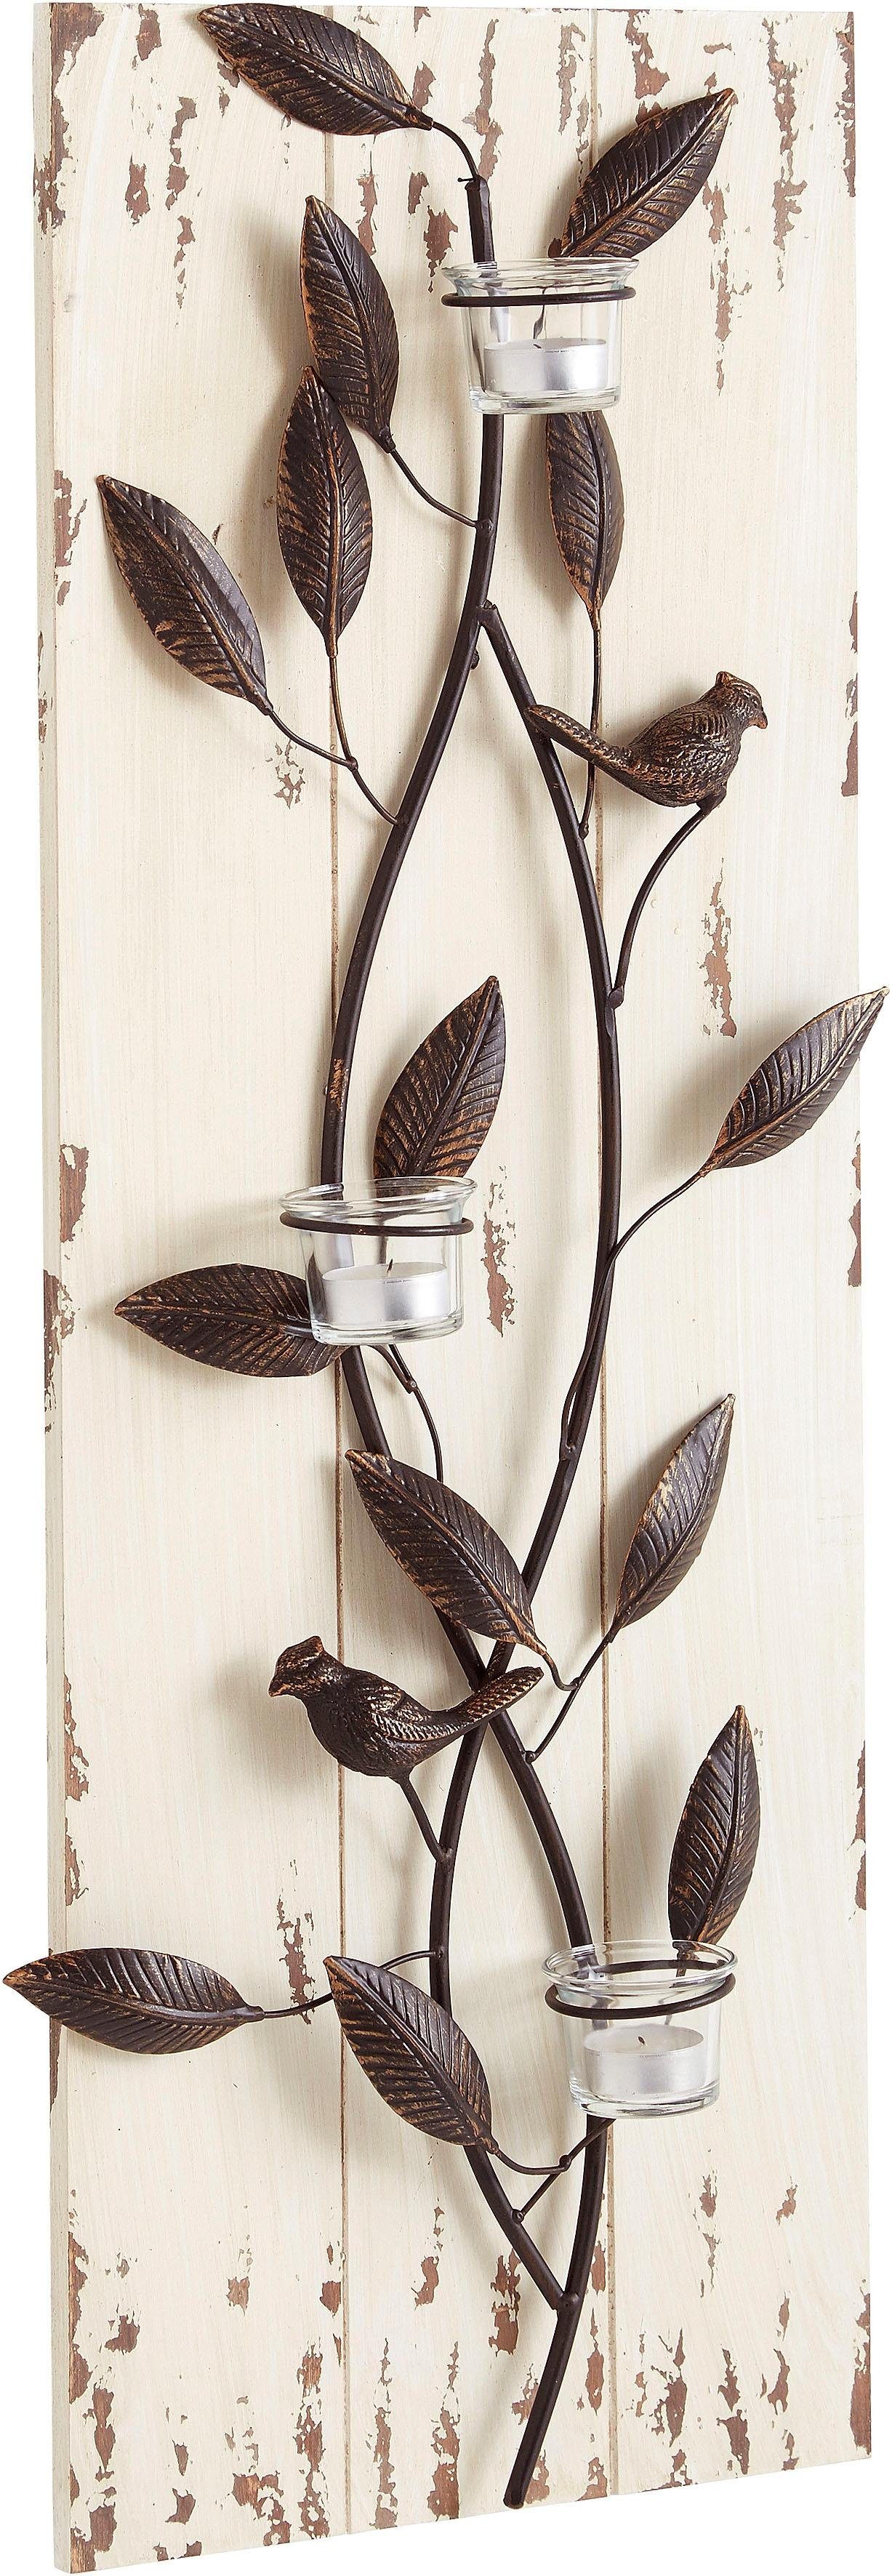 pajoma® Wandpaneel, BxL: 37x85 cm, mit Teelichtern und Vögelchen